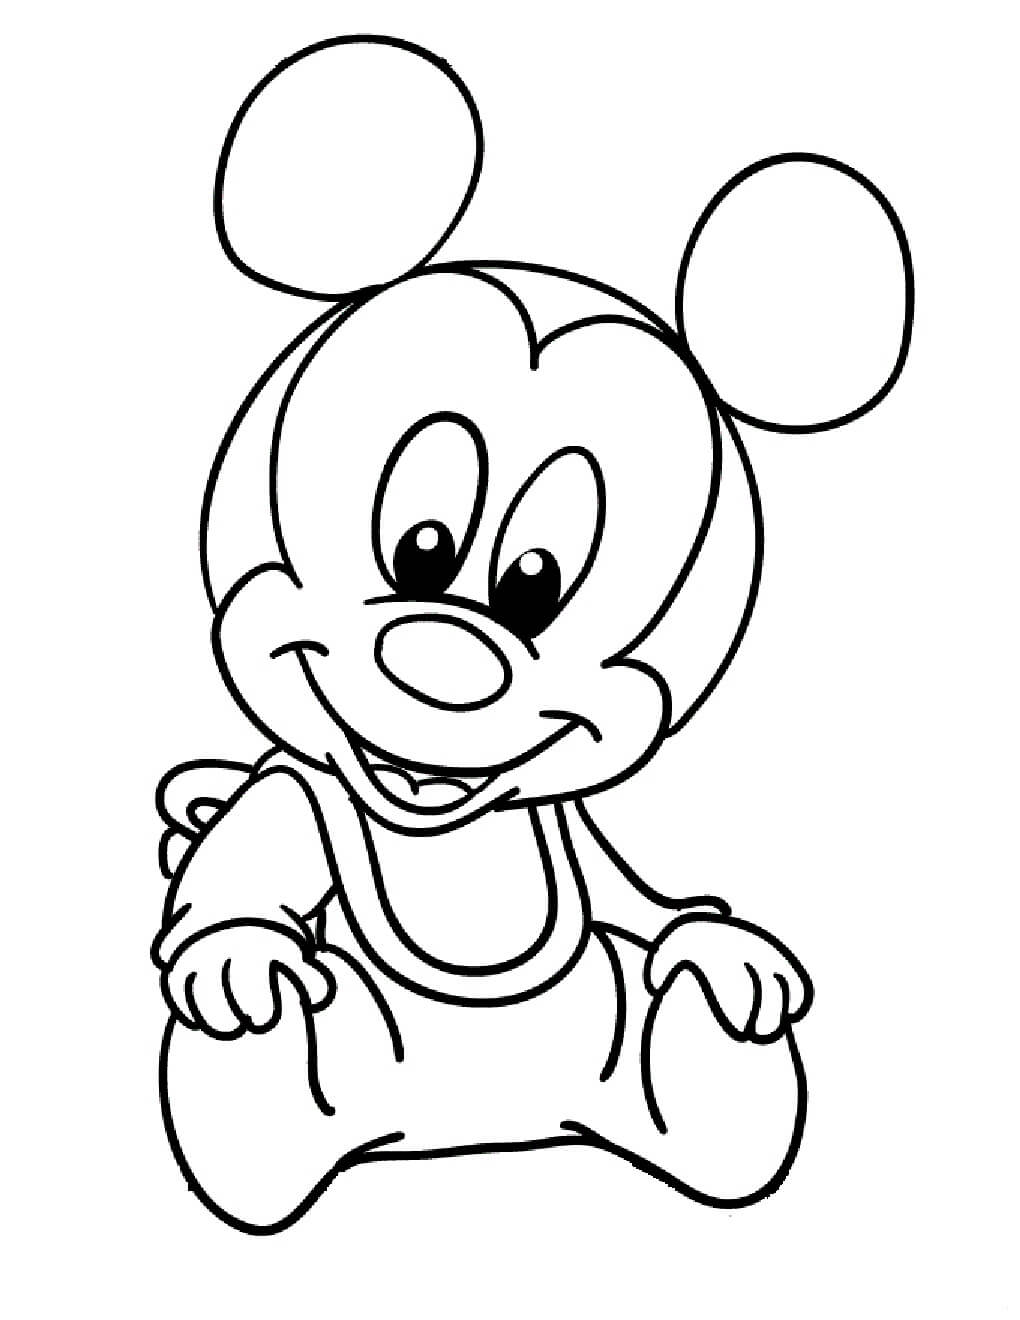 Bébé Mickey coloring page